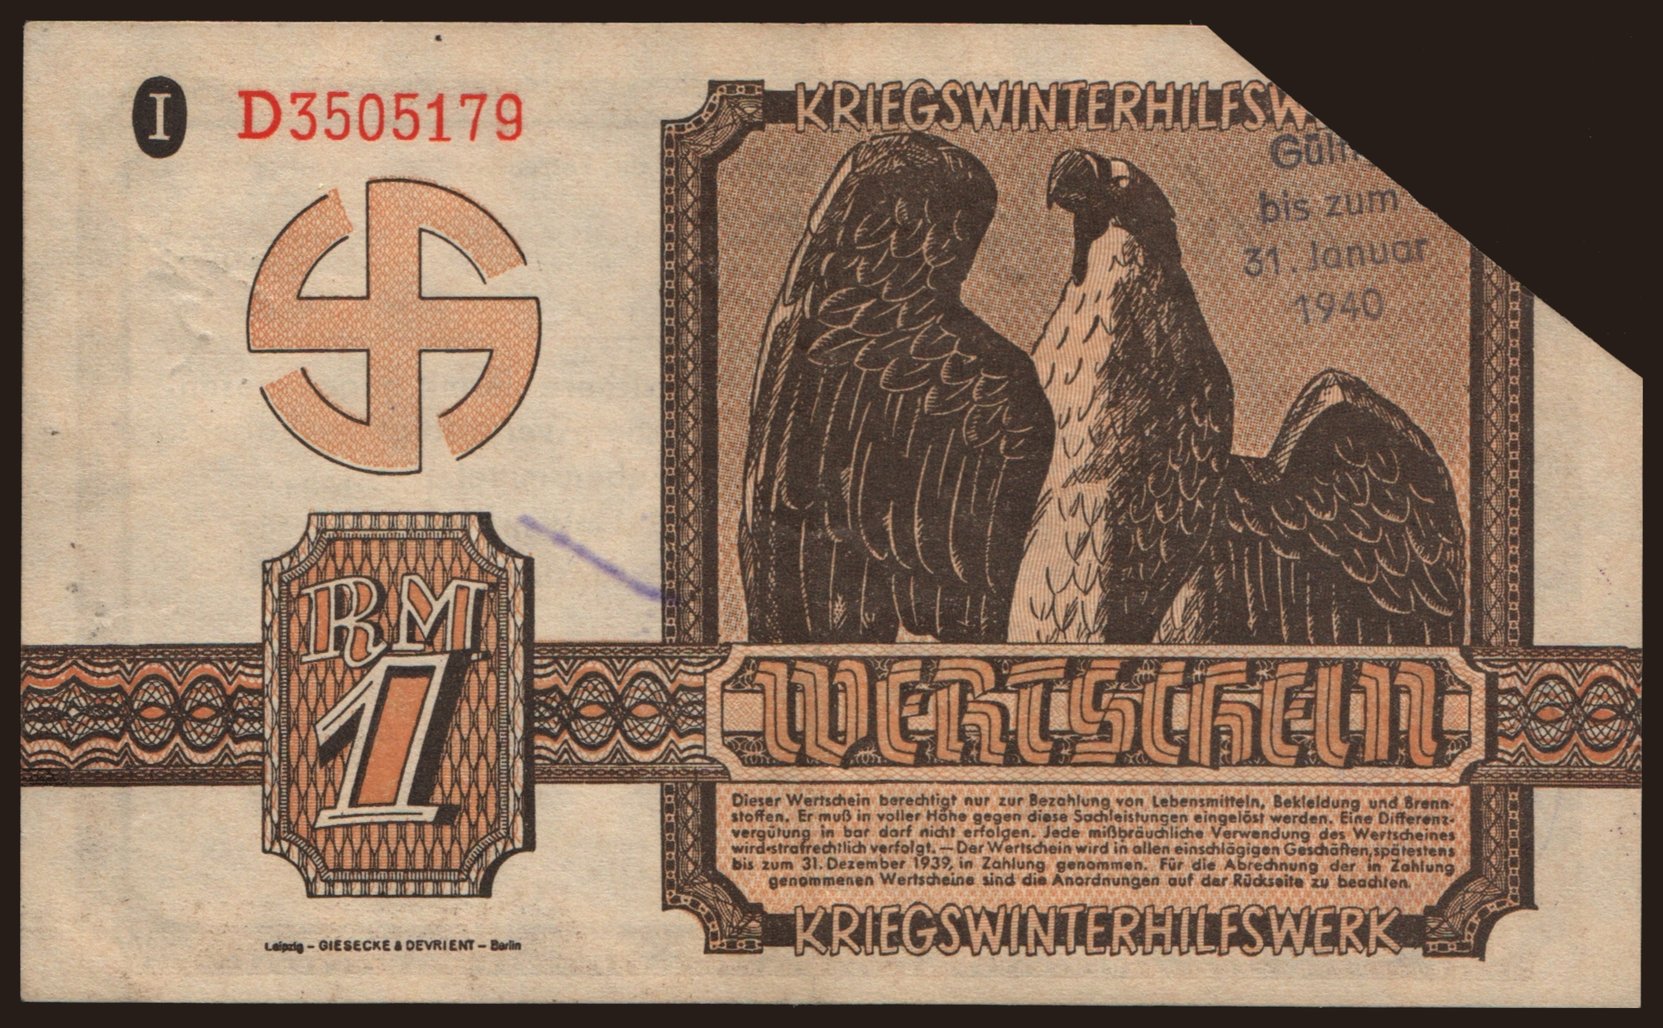 Winterhilfswerk, 1 Reichsmark, 1939